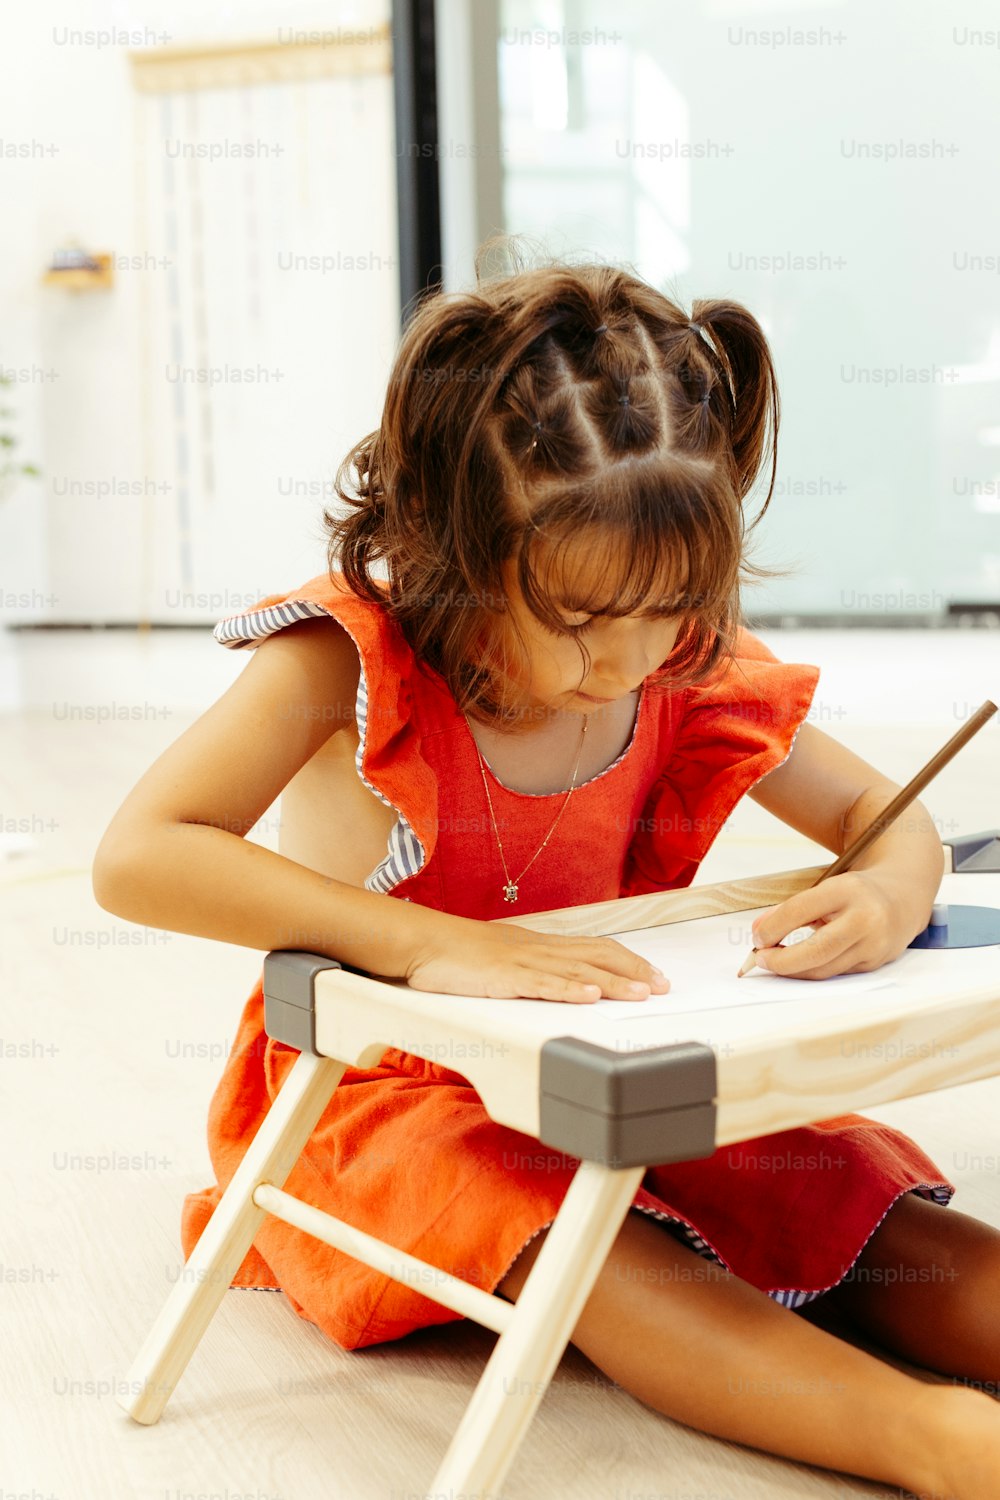 Una niña sentada en el suelo escribiendo en un pedazo de papel